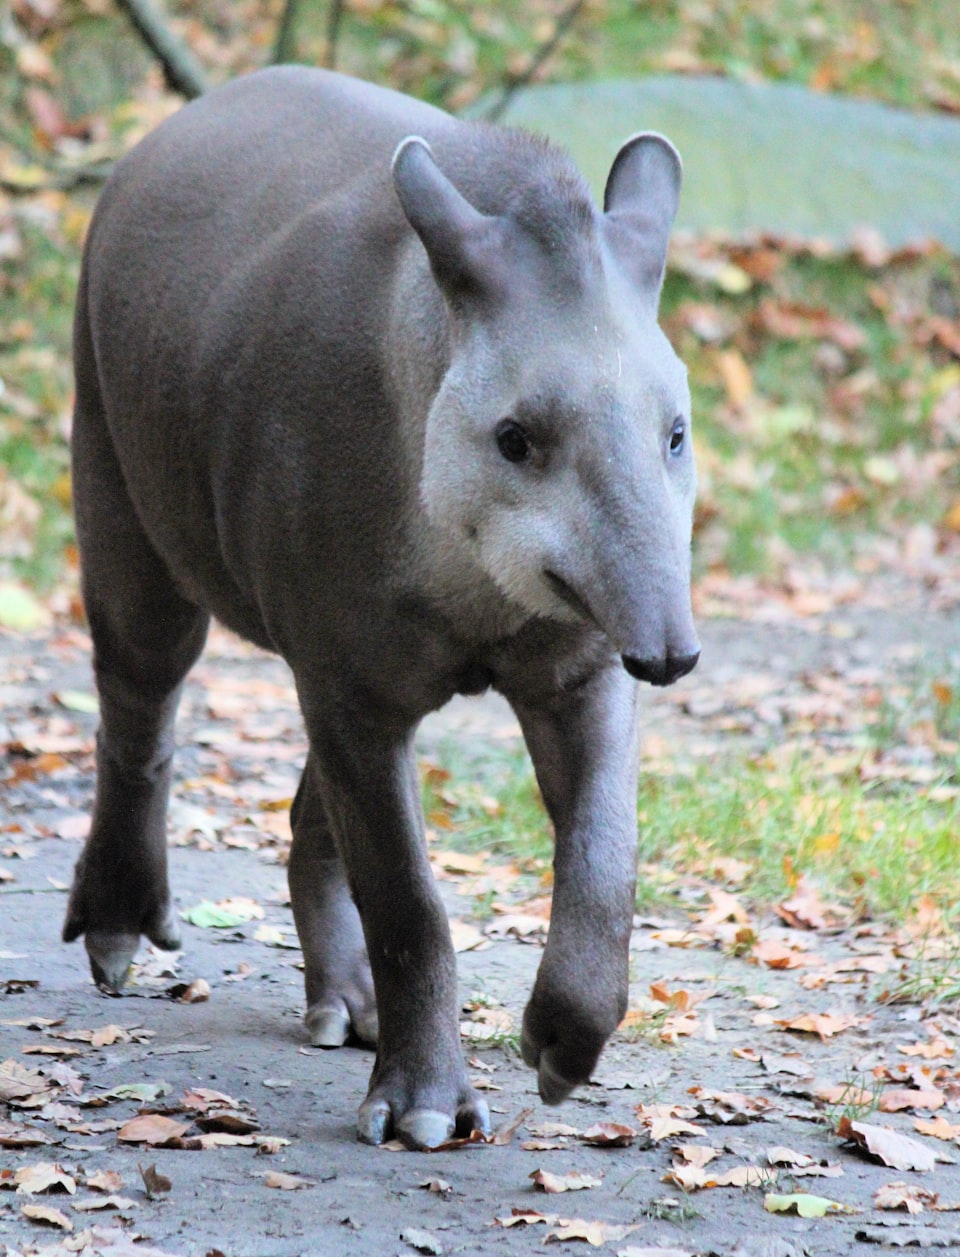 A baby tapir